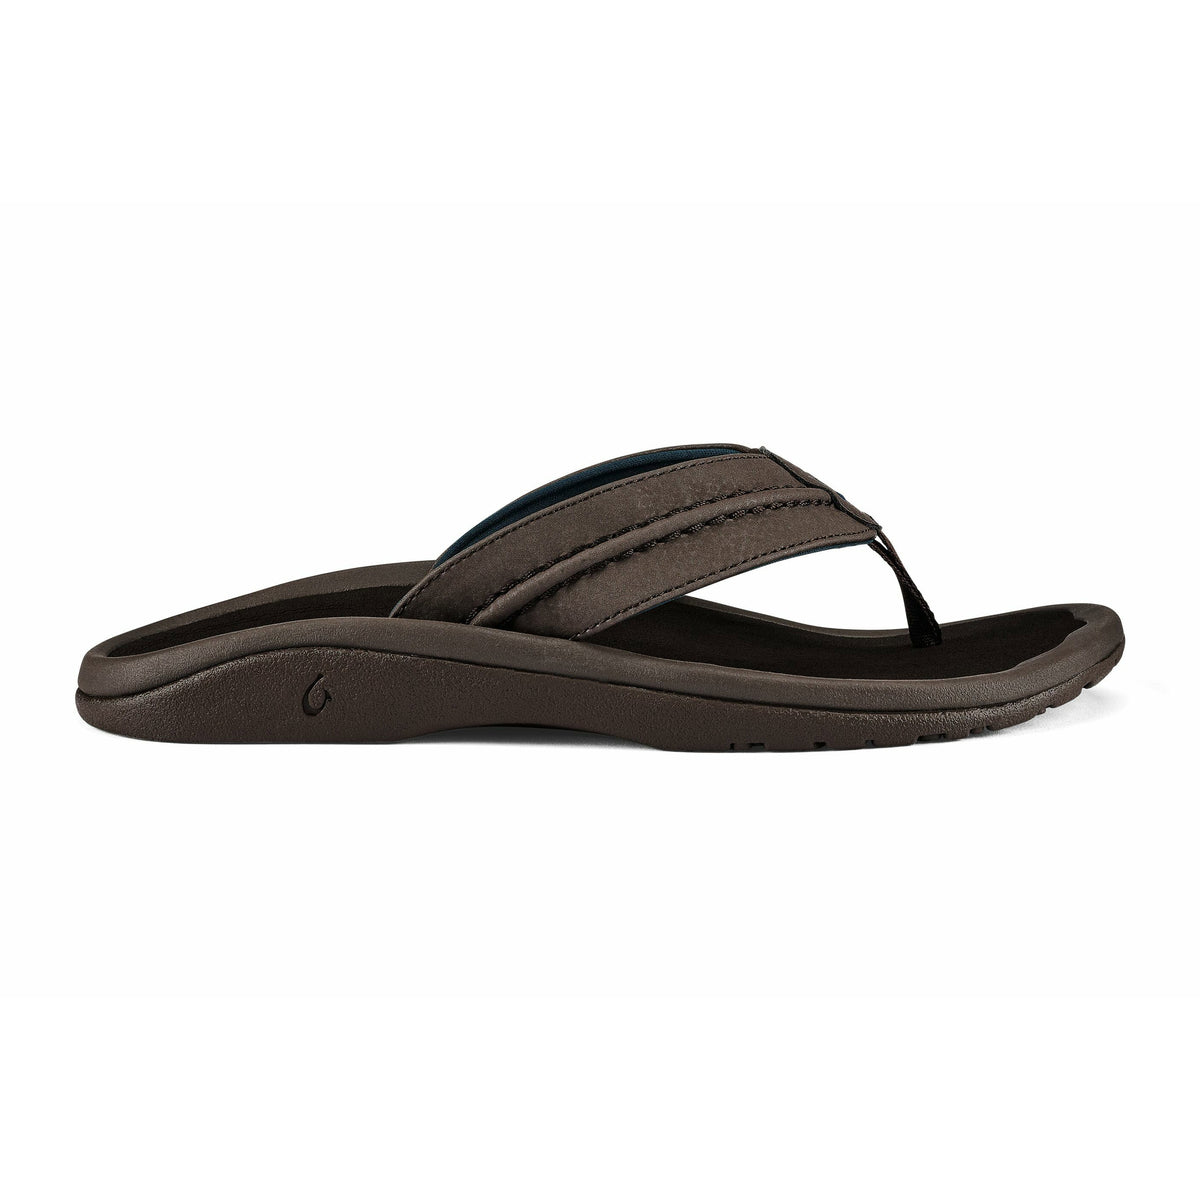 A single brown Olukai Hokua men’s sandal on a white background.